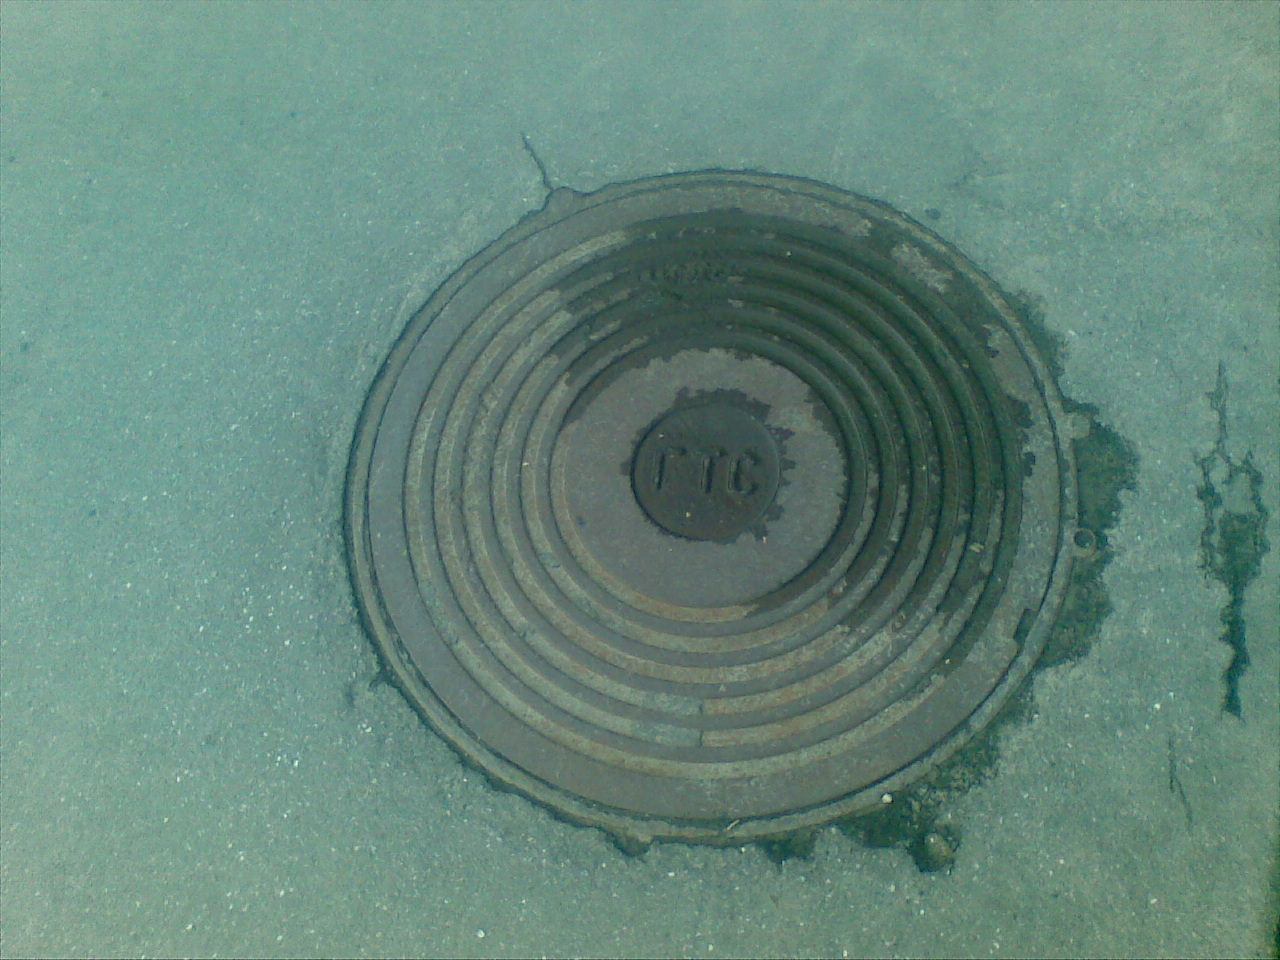 gts_manhole.jpg